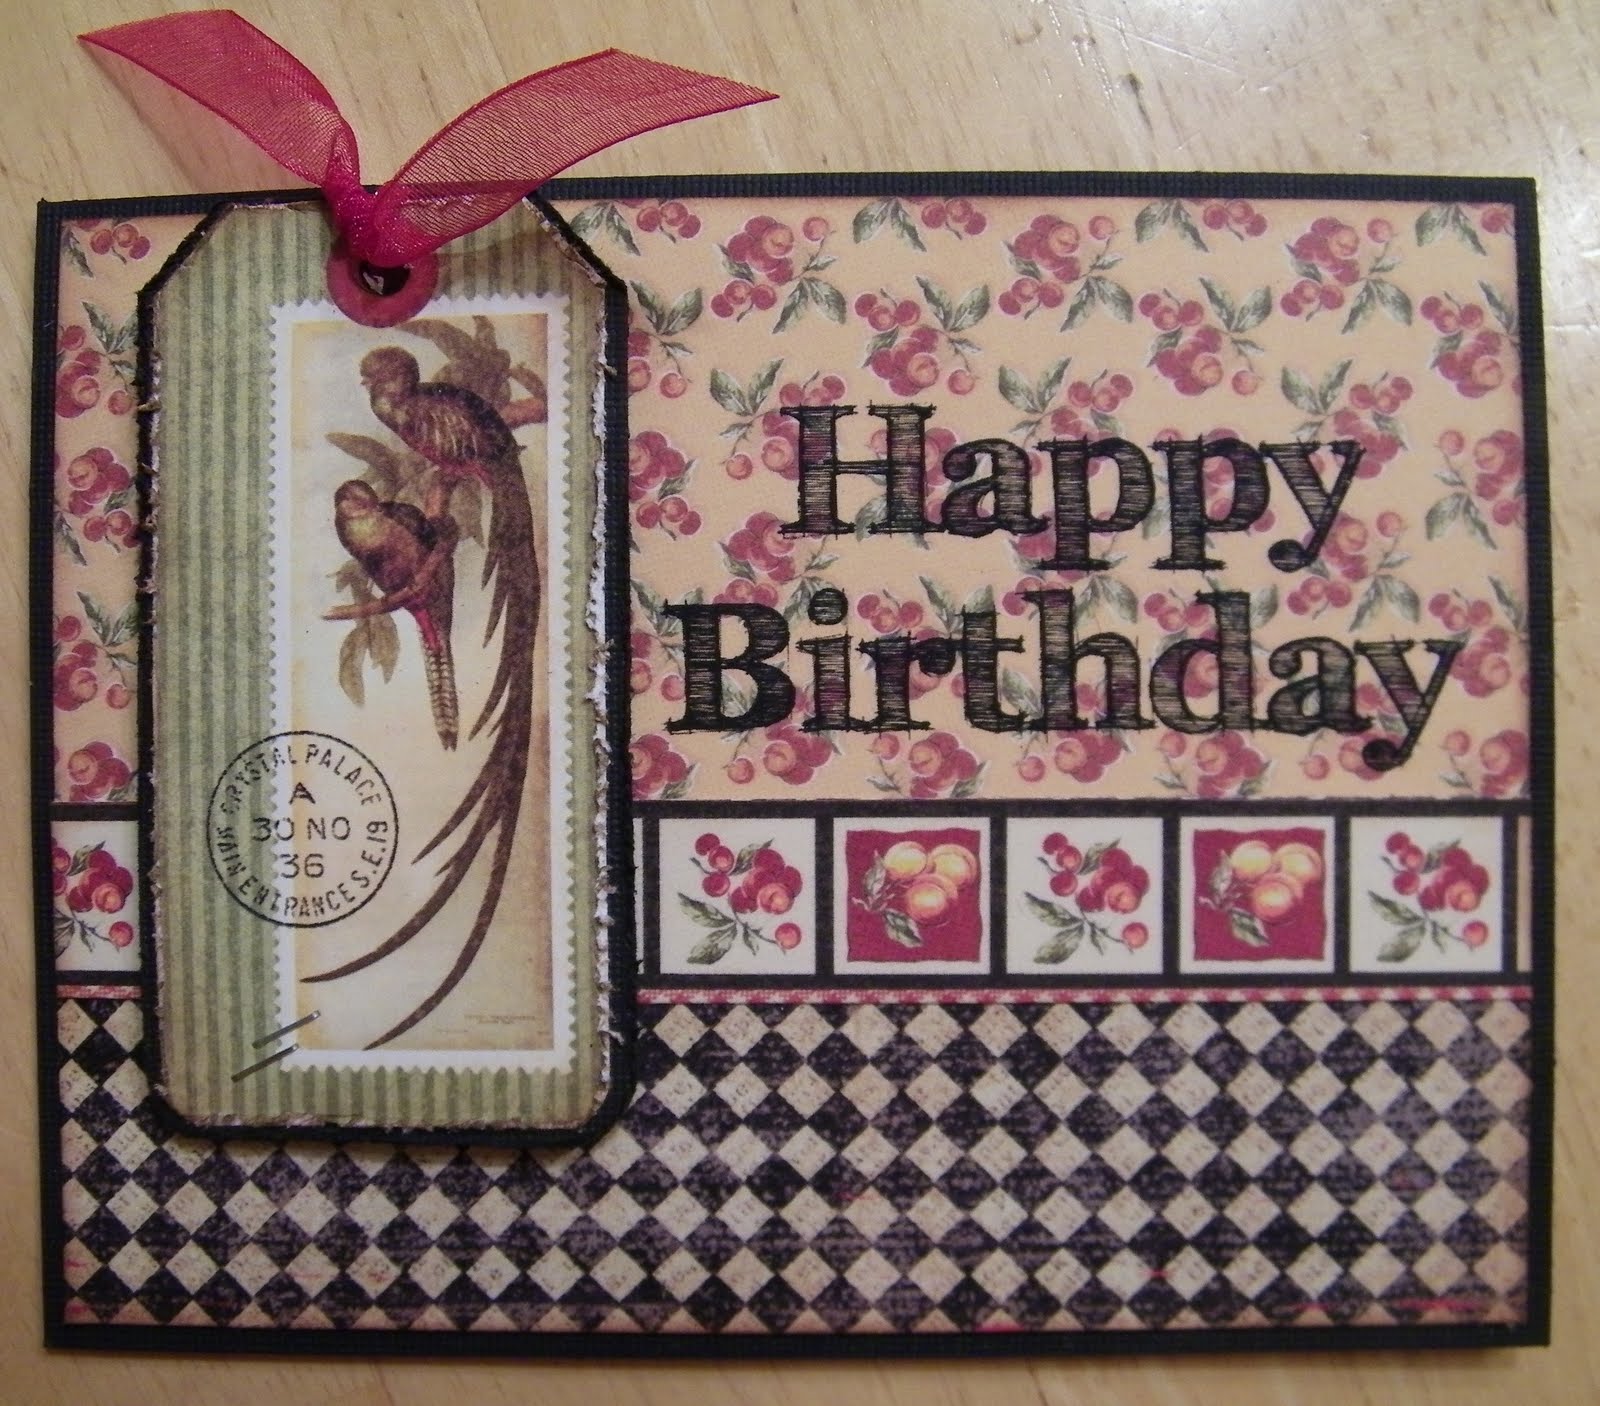 19 DIY Birthday Card Ideas - Cute Birthday Card Ideas You Can Make